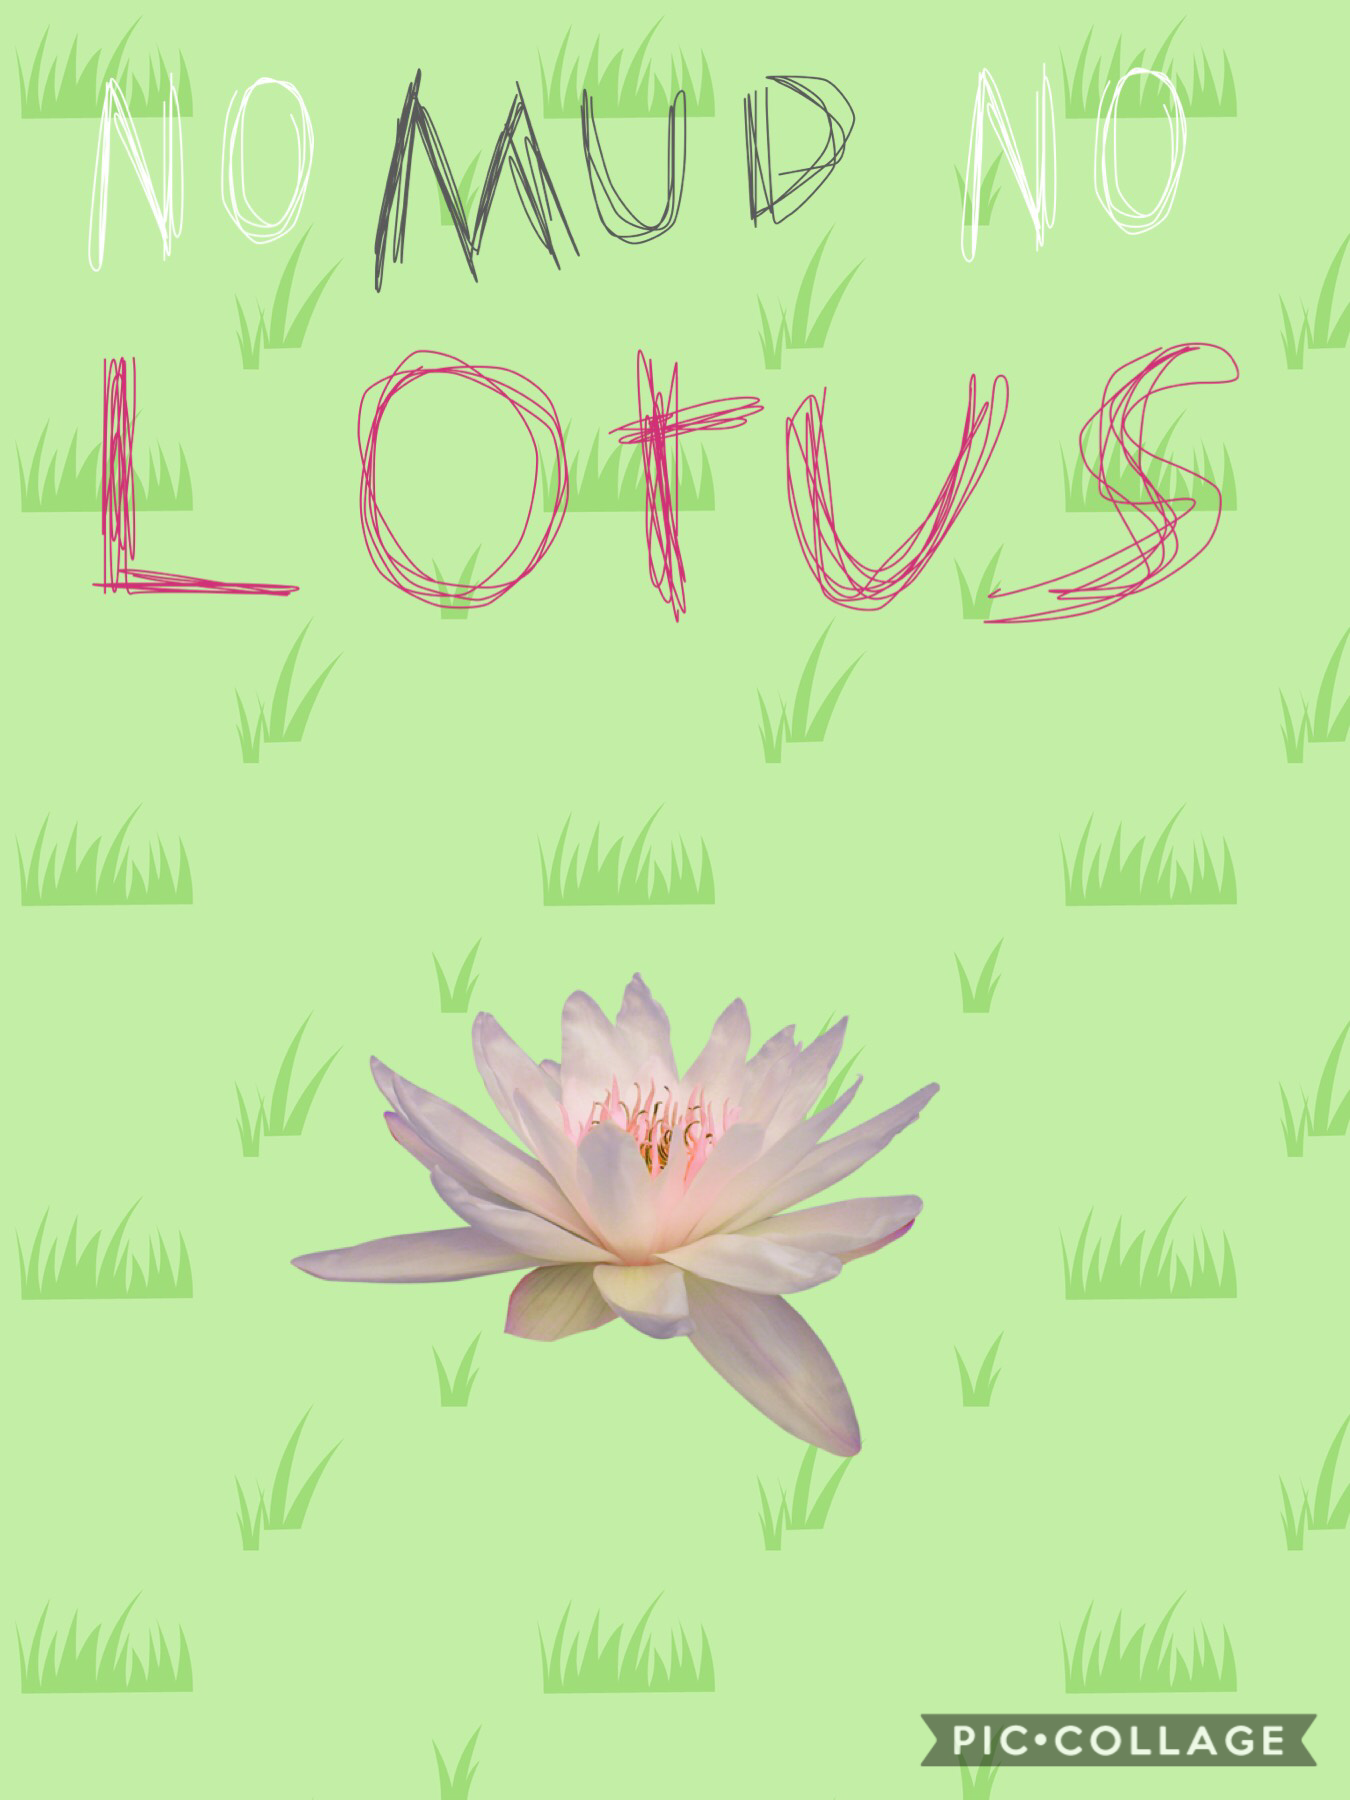 No mud no lotus!